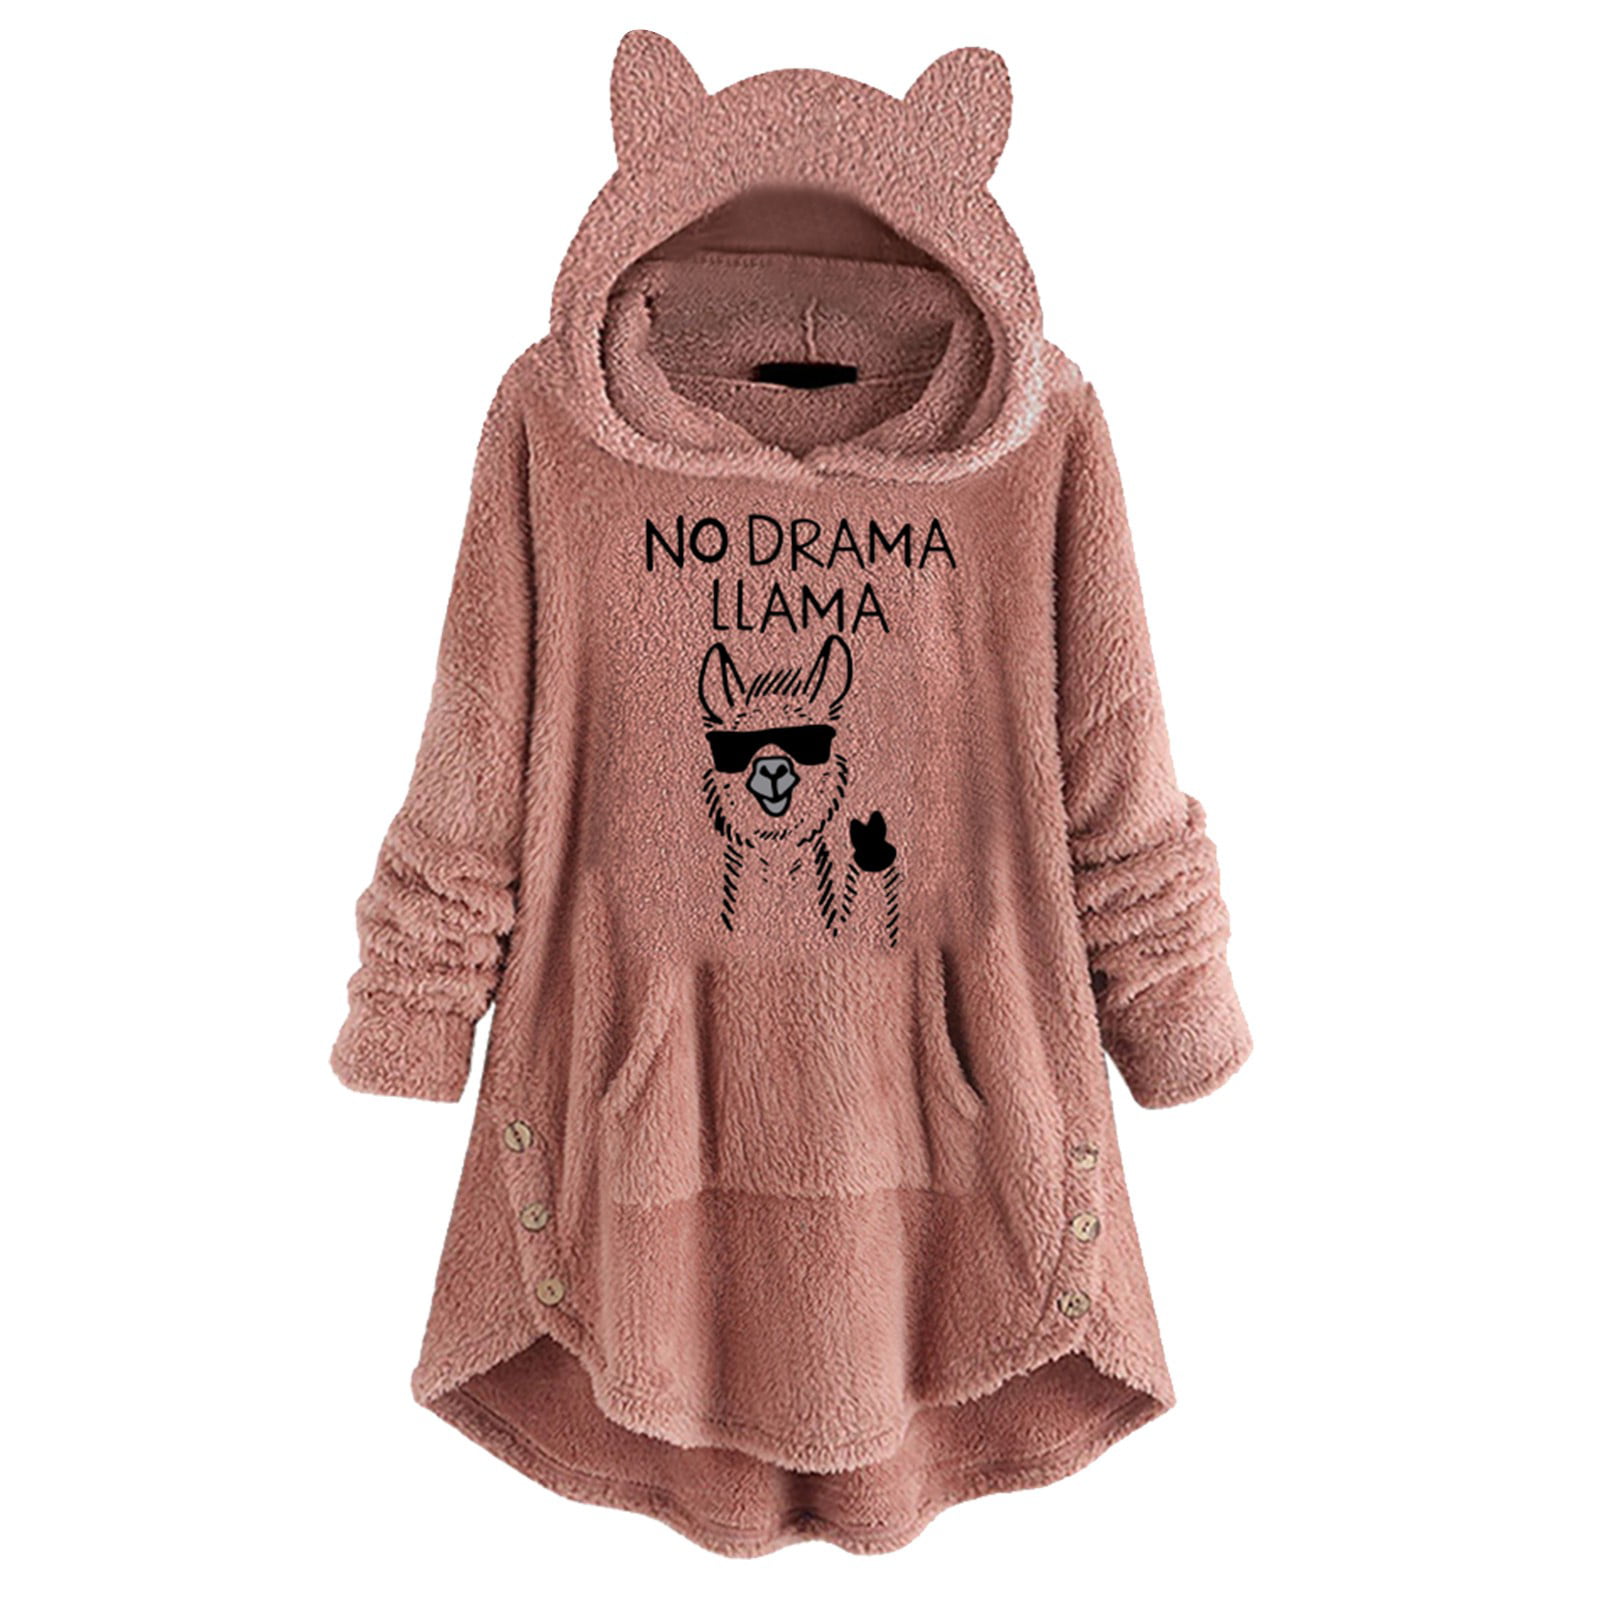 Womens Sweatshirt Cat Print Hoodie With Ears Hooded Pullover Tops Blouse US 